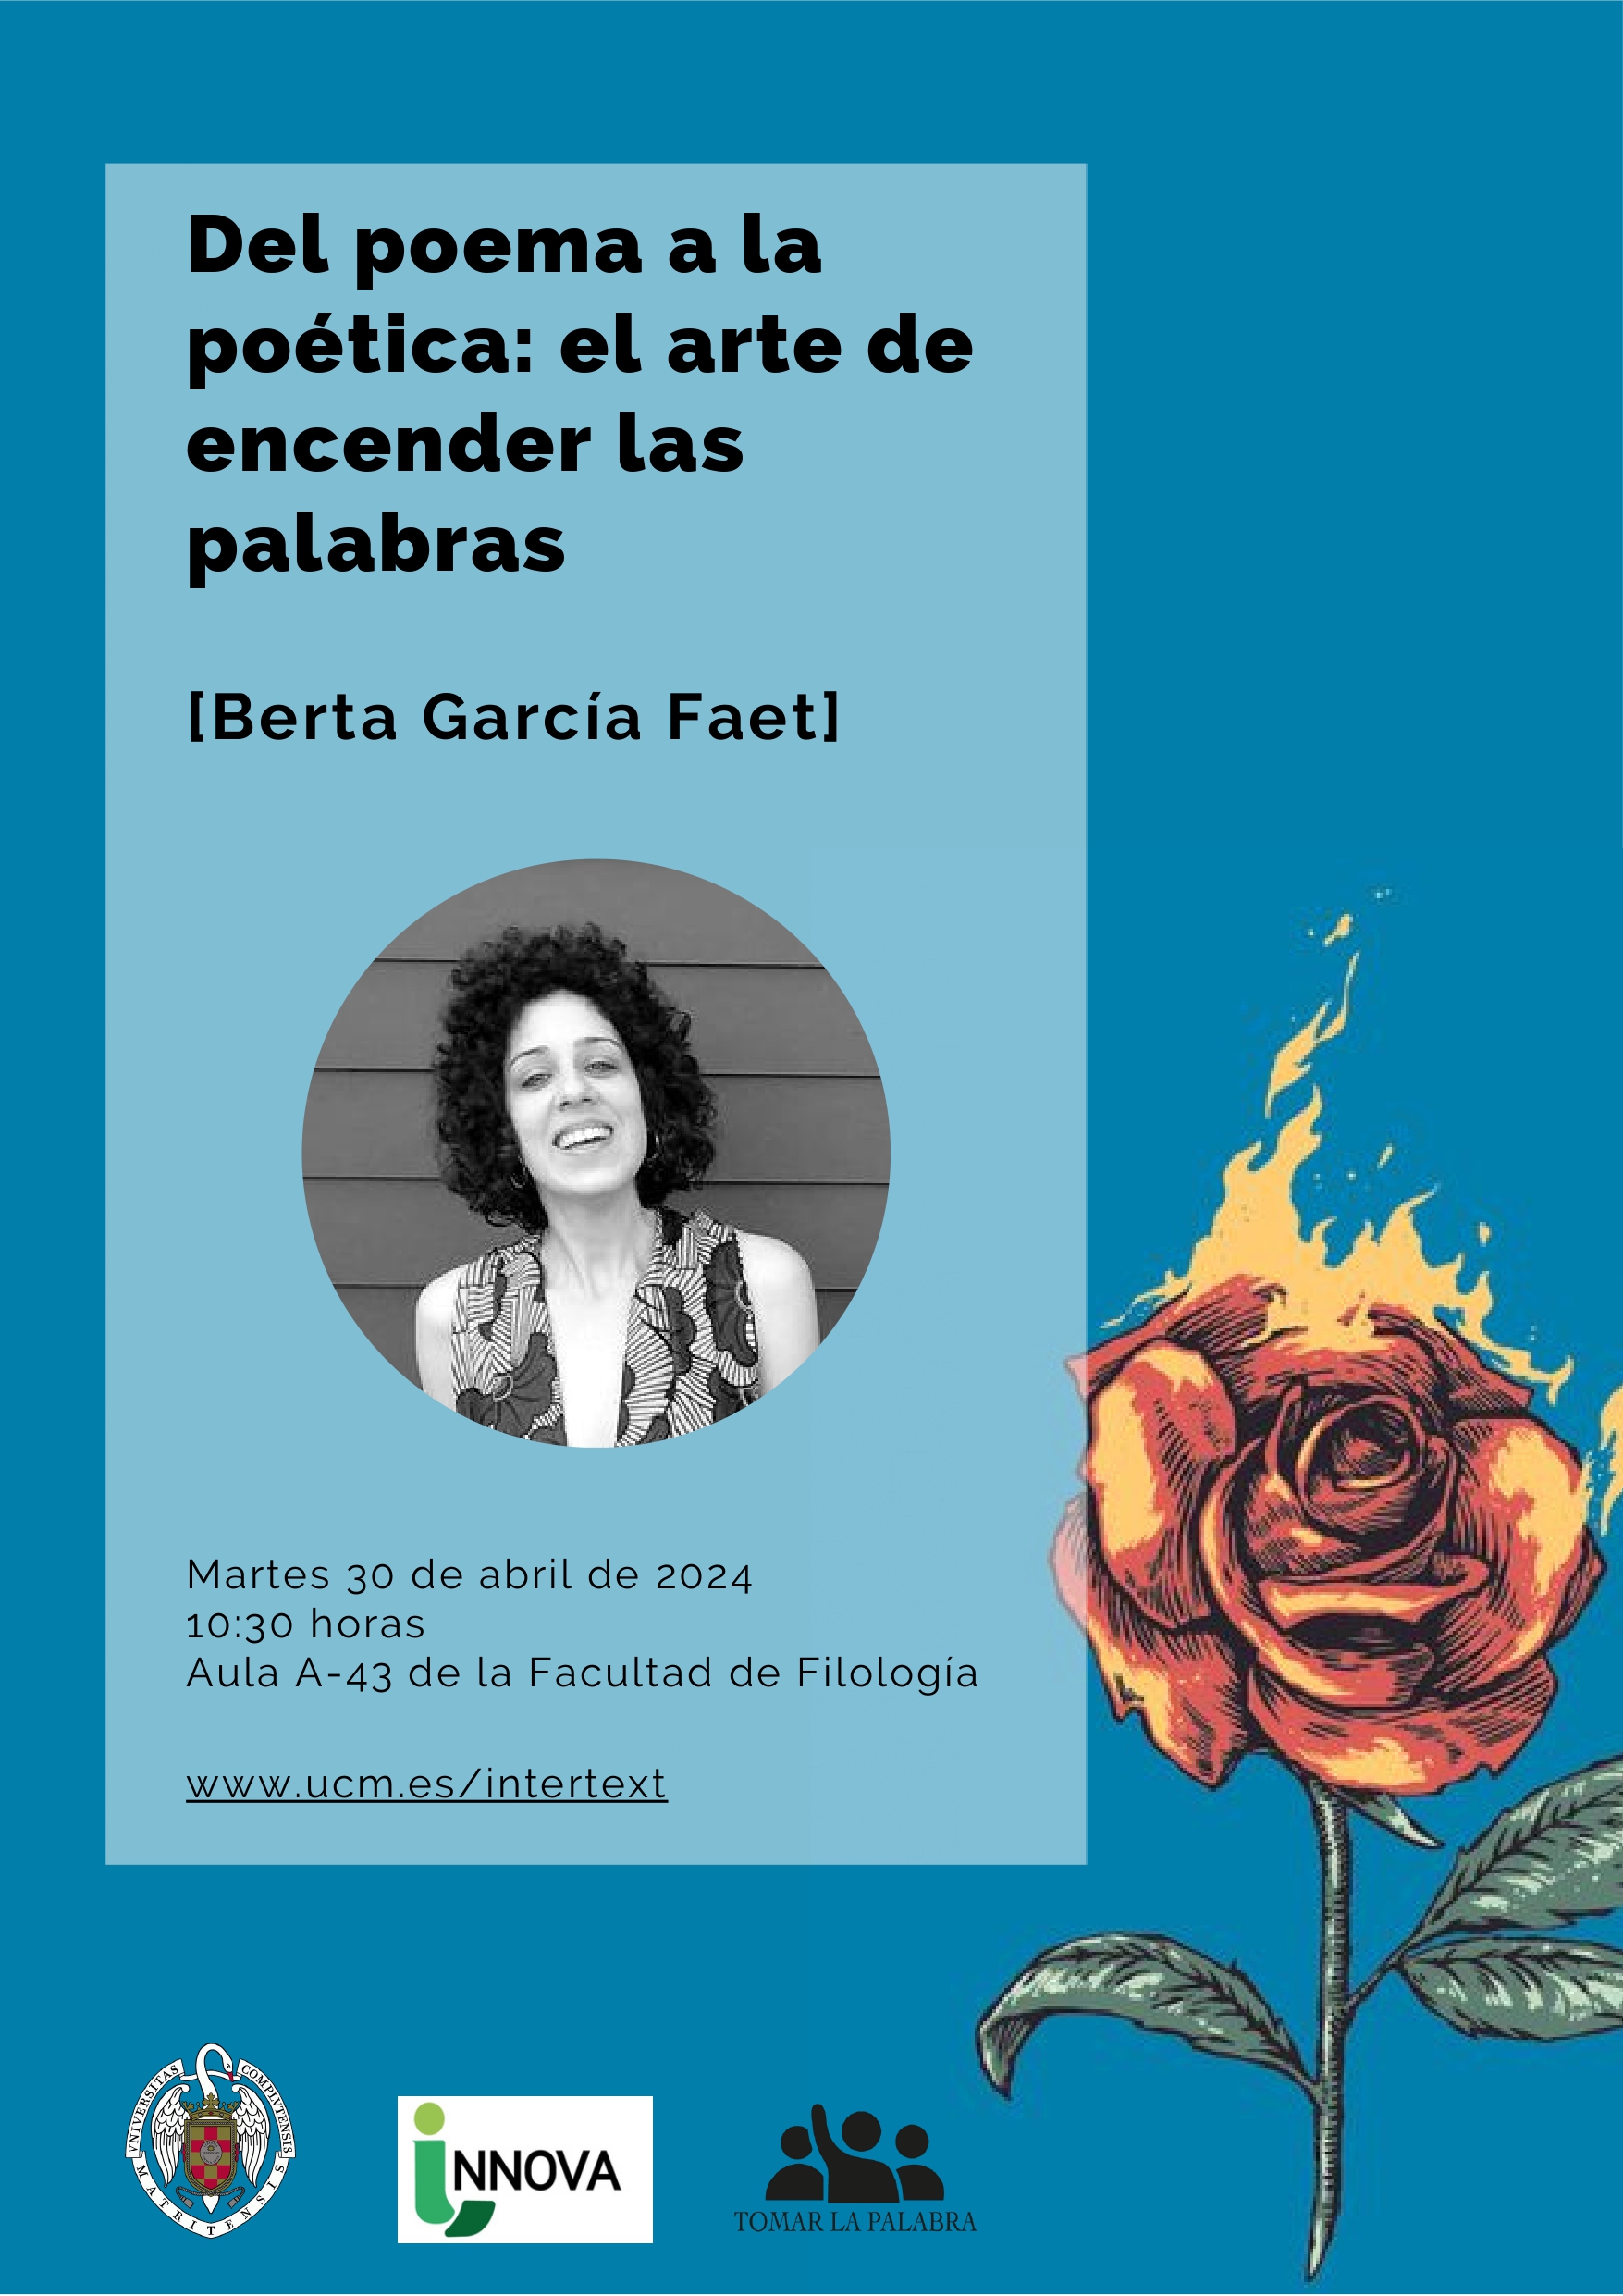 Berta García Faet, "Del poema a la poética: el arte de encender las palabras"